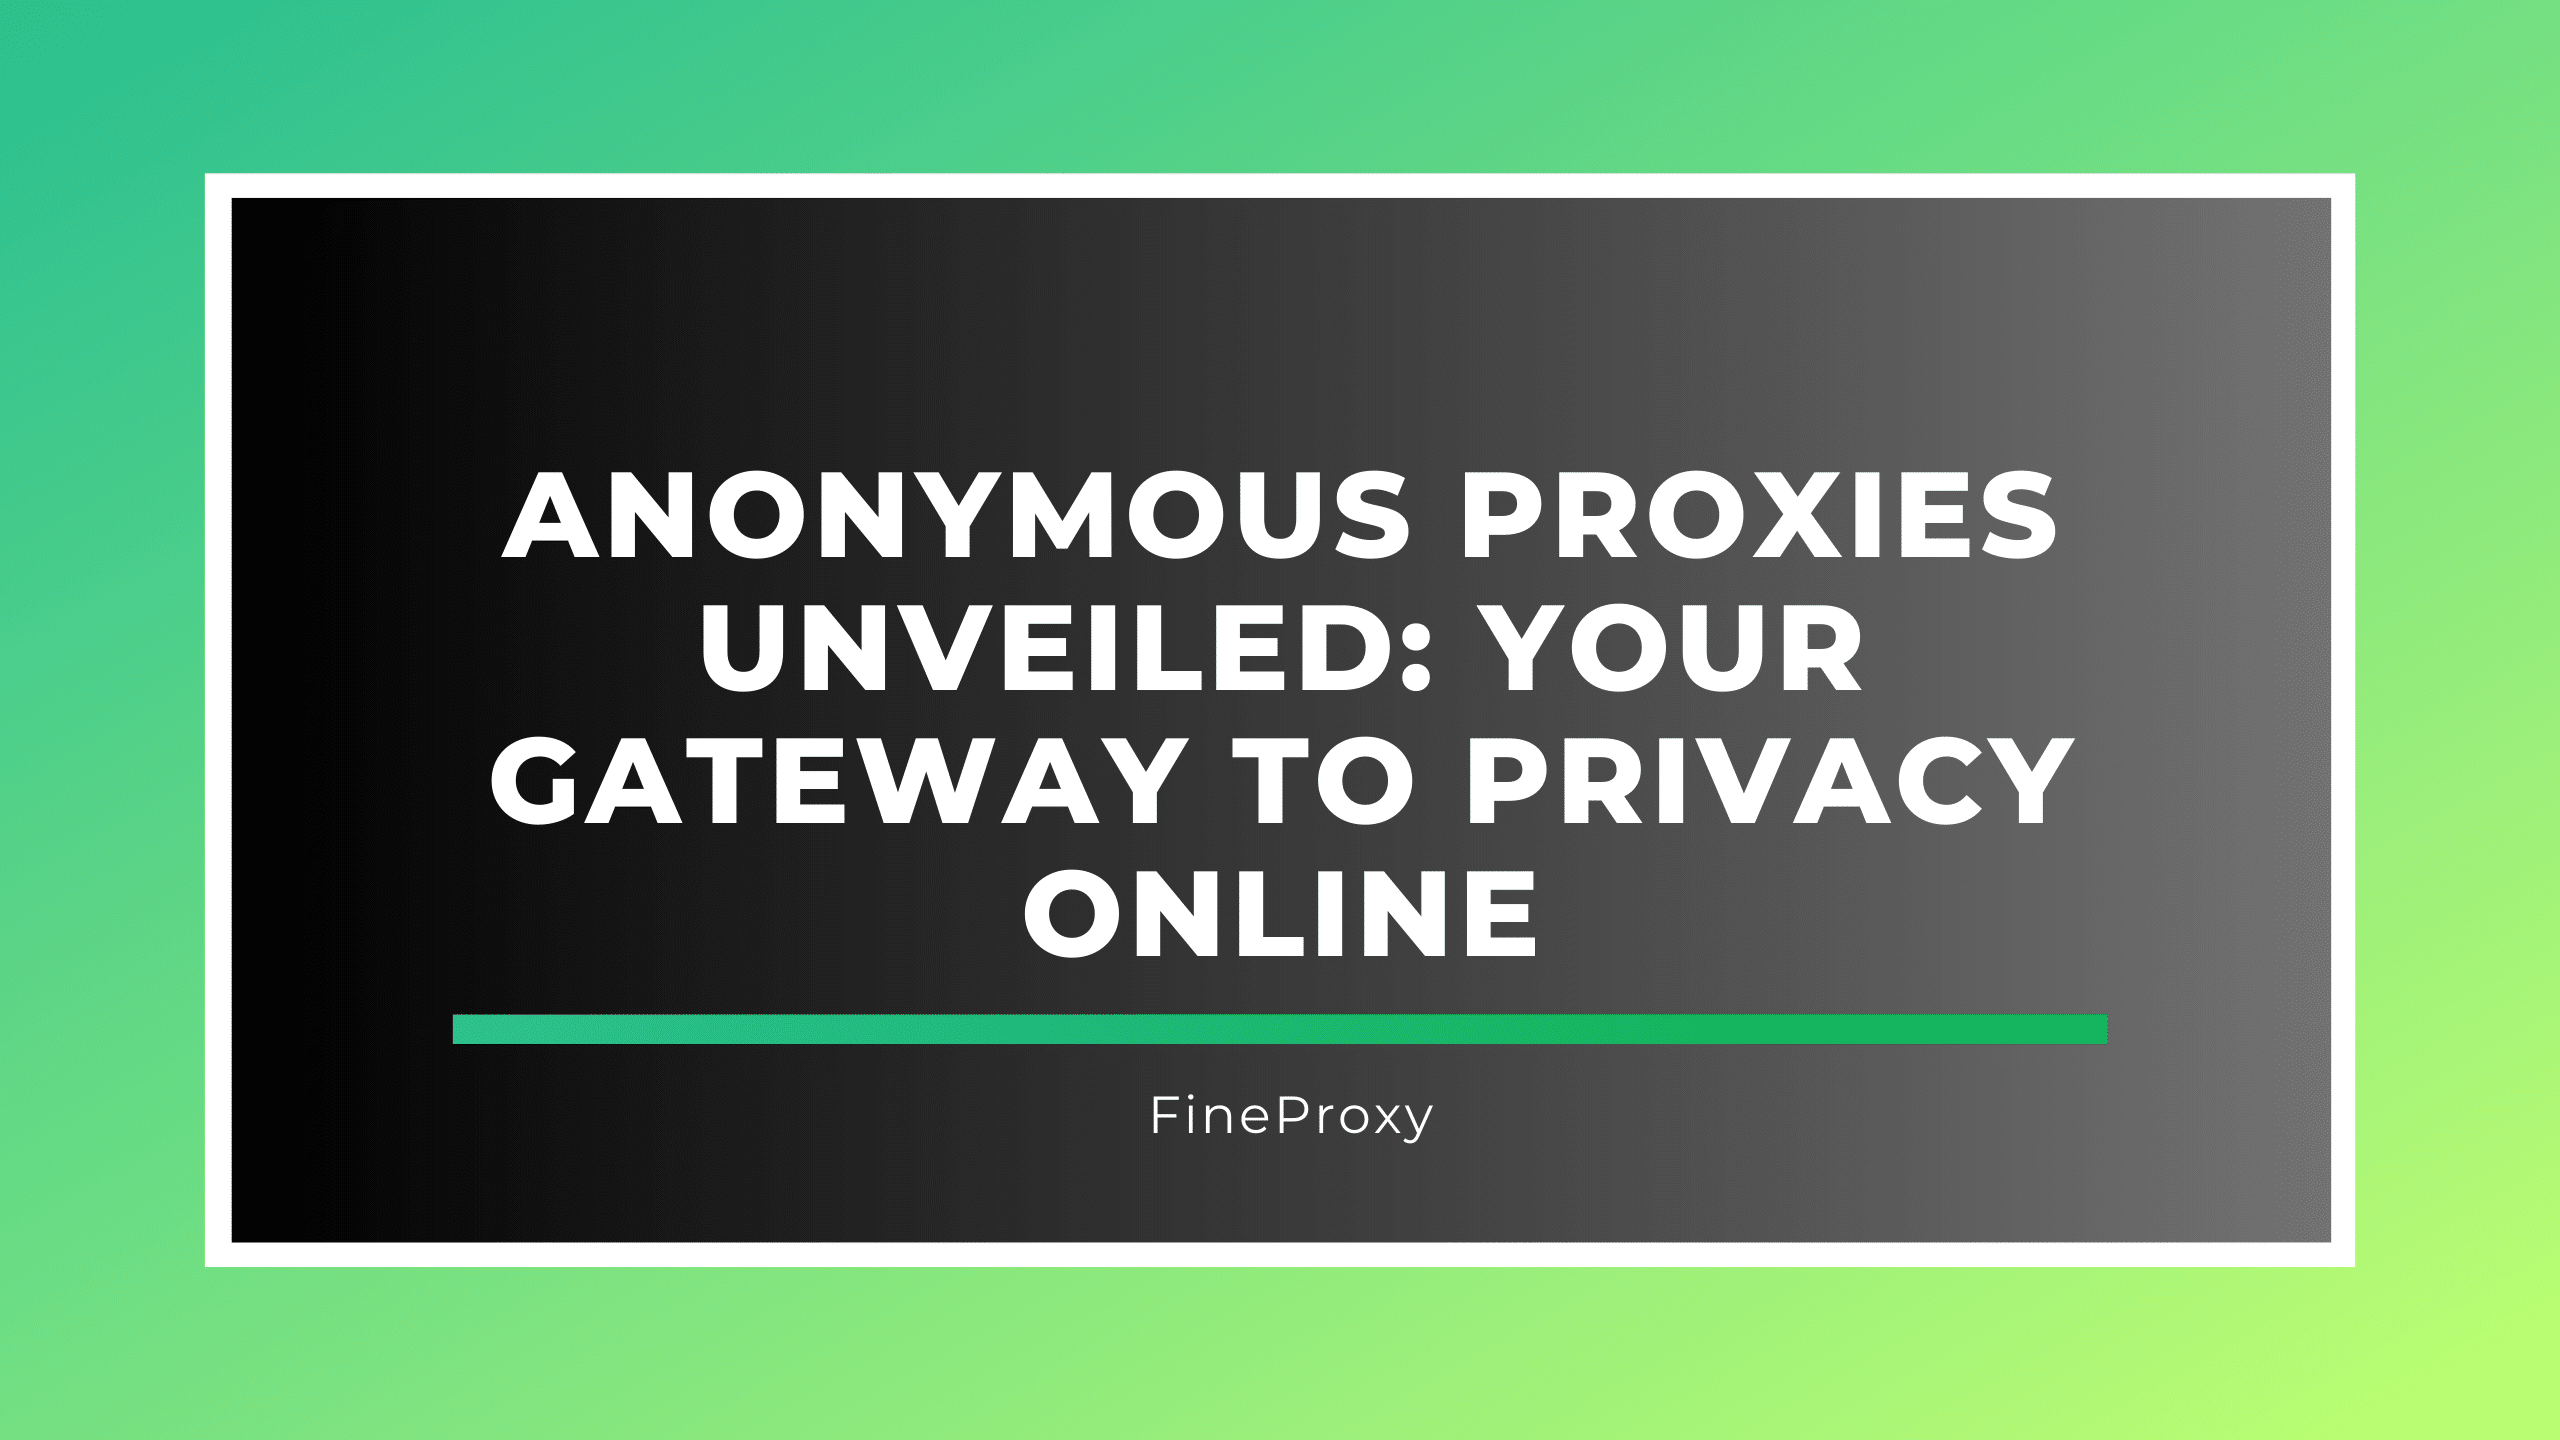 Представлены анонимные прокси: ваш путь к конфиденциальности в Интернете